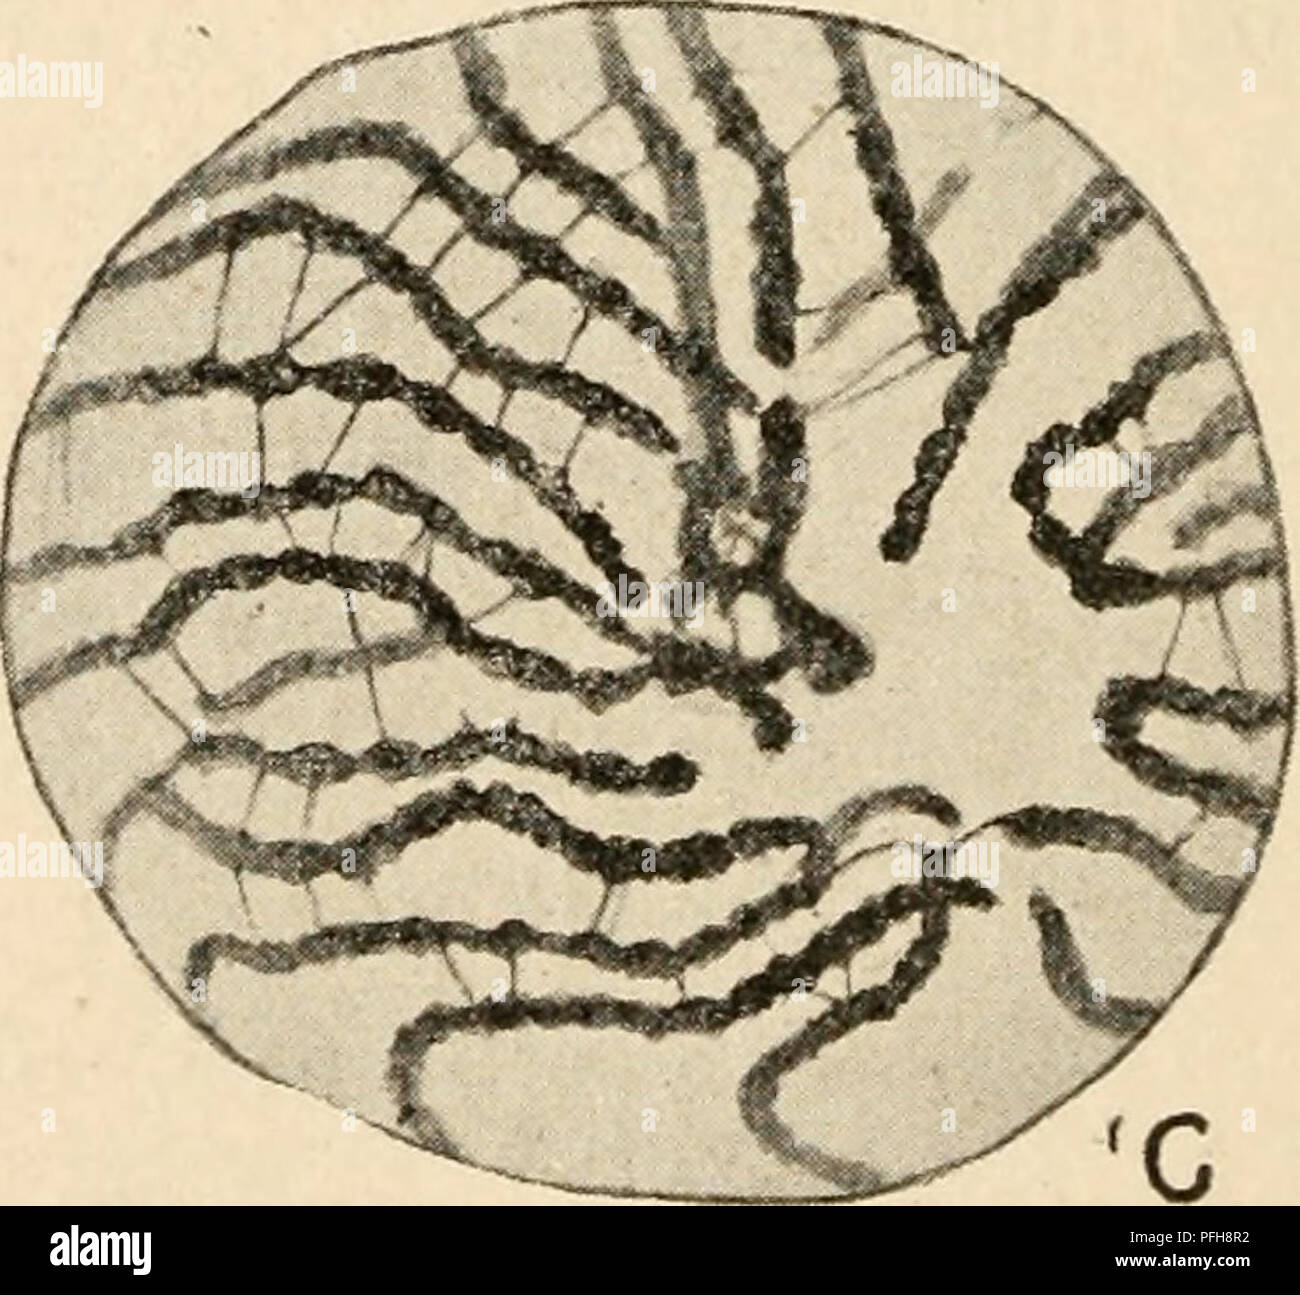 . Citologia, con speciale riferimento al nucleo metazoan. Le cellule. Fig. i6. La meiosi in Lepidosiren (maschio). (Agar, D.J.M.S., 1912.), P^ing spermatogomal nuc^^^^^ Gli spermatogoni! Prophase ; D, figlia piastra da una Gli spermatogoni! Anaphase ; E, restmg spermatocyte 1., F, zygotene; G, nucleo pachytene. A seguito di questa situazione, la parola synapsis proposto da Moore per coprire tutto il periodo della meiosi in cui syndesis si verifica, è stato applicato da molti cytologists alla sua più cospicua solo funzione, ossia la contrazione appena descritto. Esso è stato accuratamente estabhshed tuttavia che il co Foto Stock